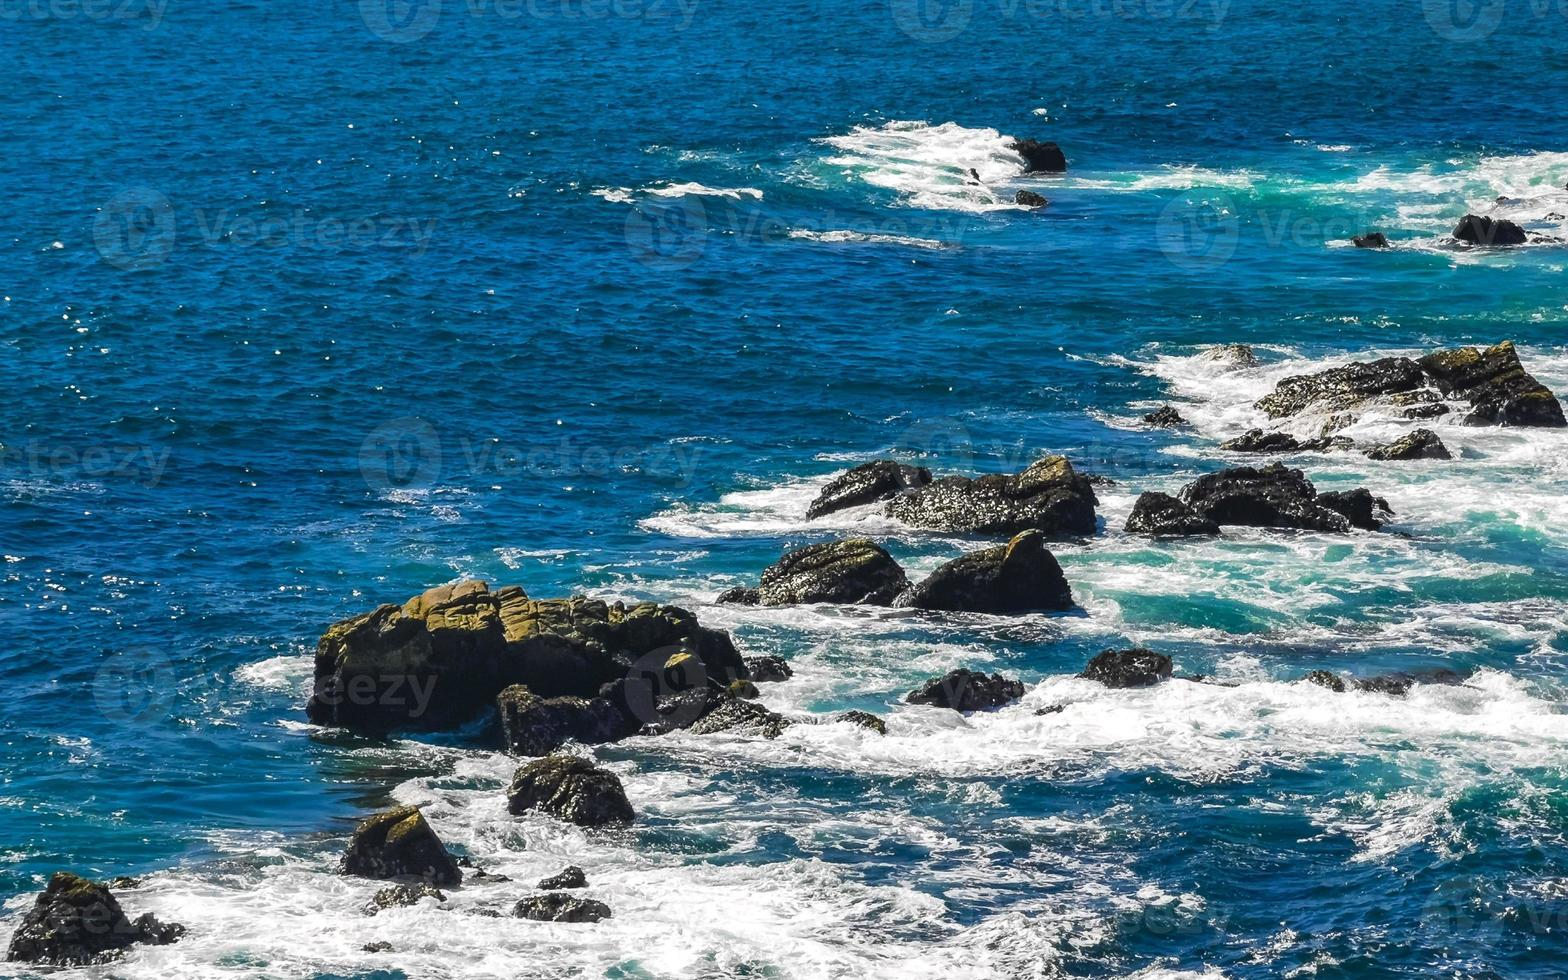 hermosas rocas acantilados ver olas en playa puerto escondido mexico. foto